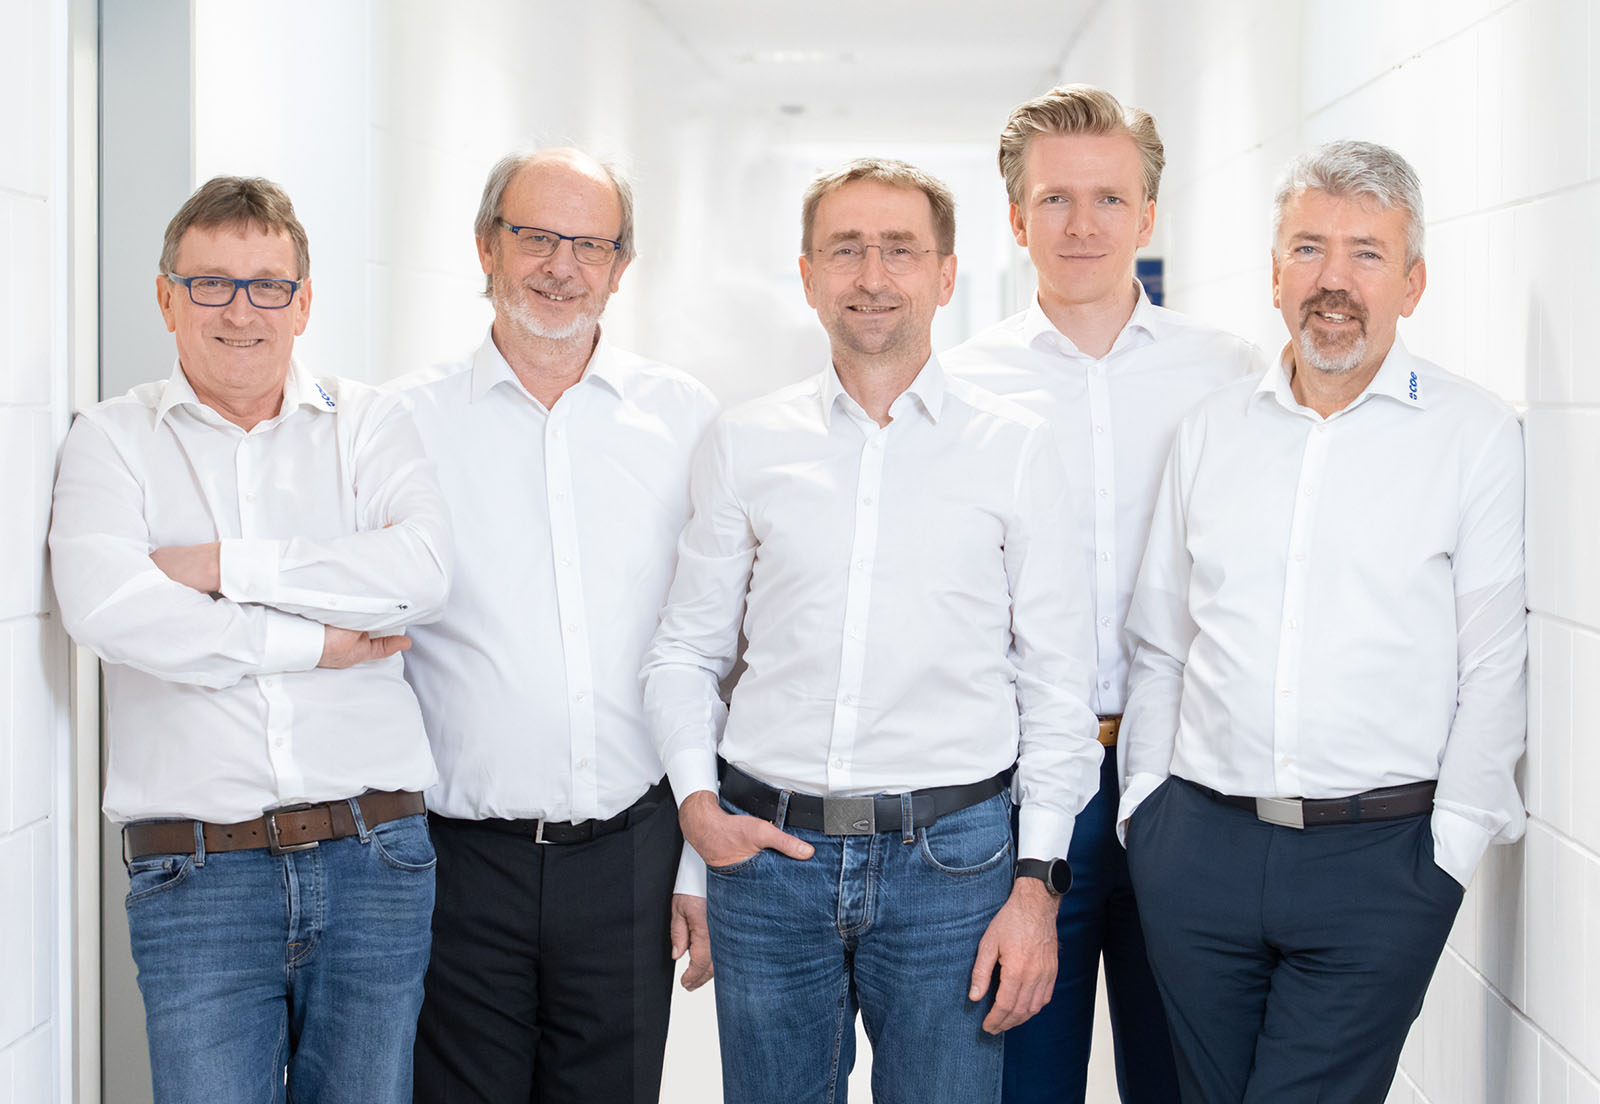 Bremen (von links nach rechts): Reinhard Giese, Holger Bornschein, Holger Ostermann, Torben Segelken, Andreas Segelken